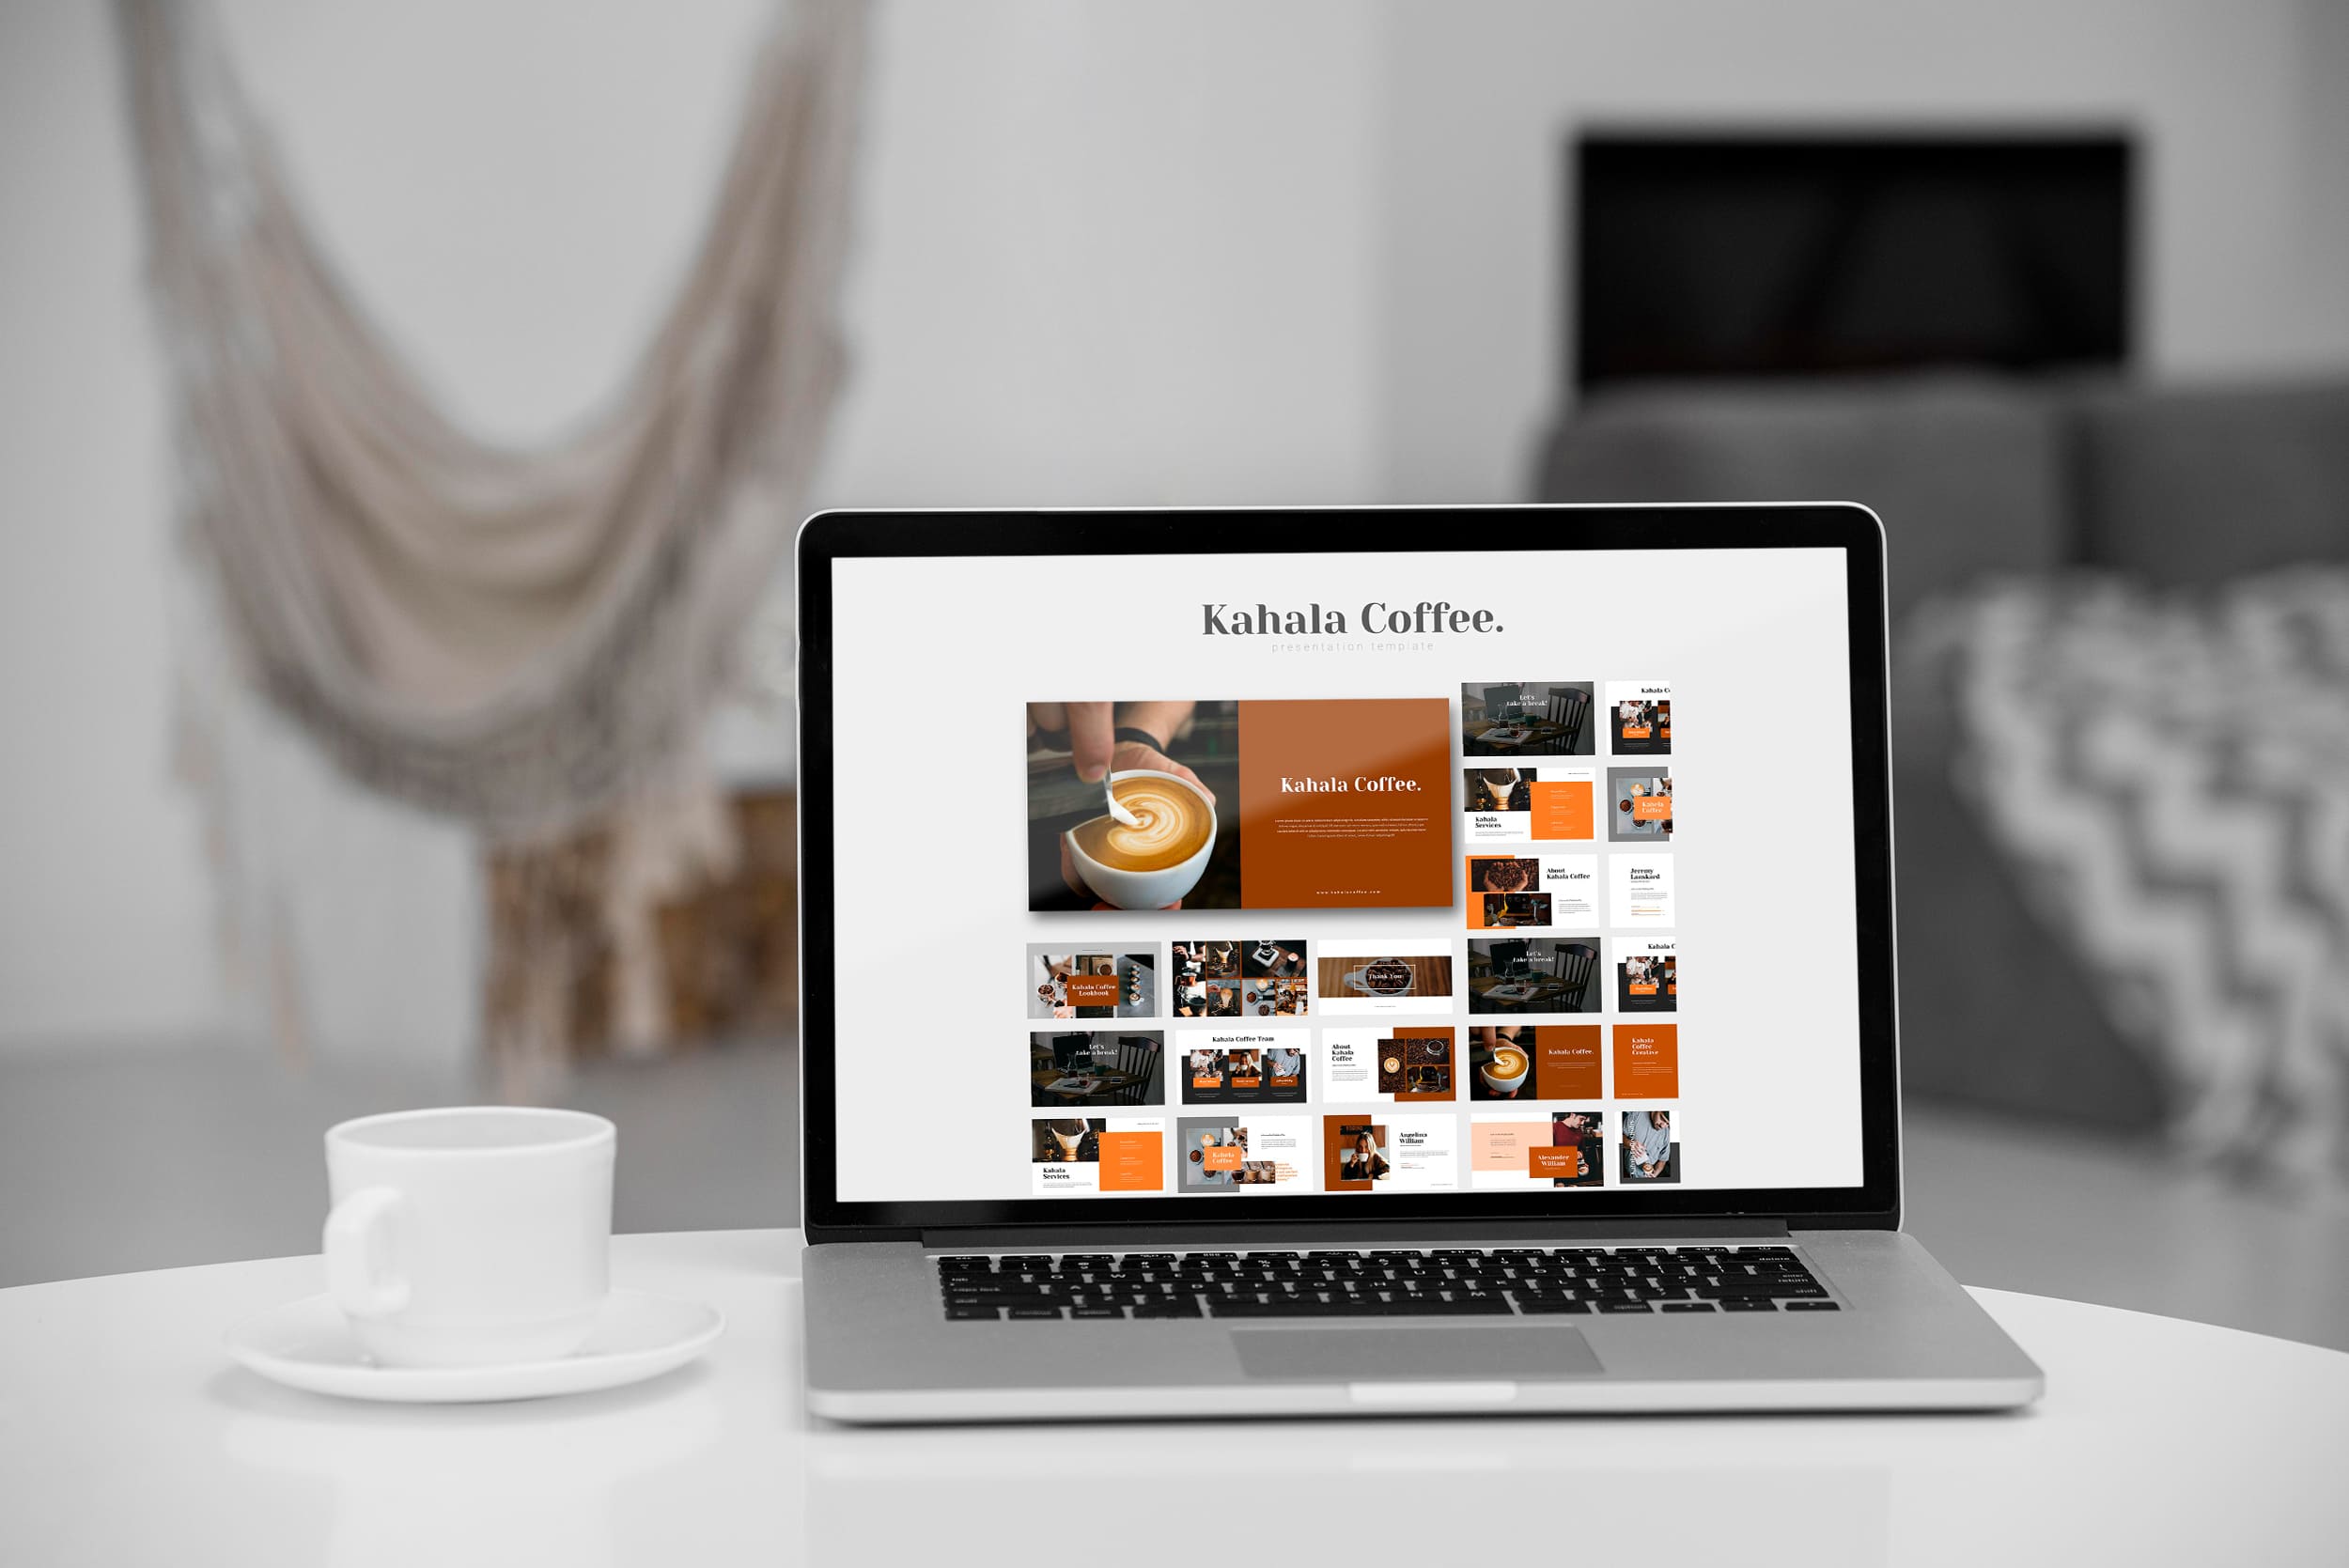 Kahala Coffee Google Slides - Mockup on Laptop.